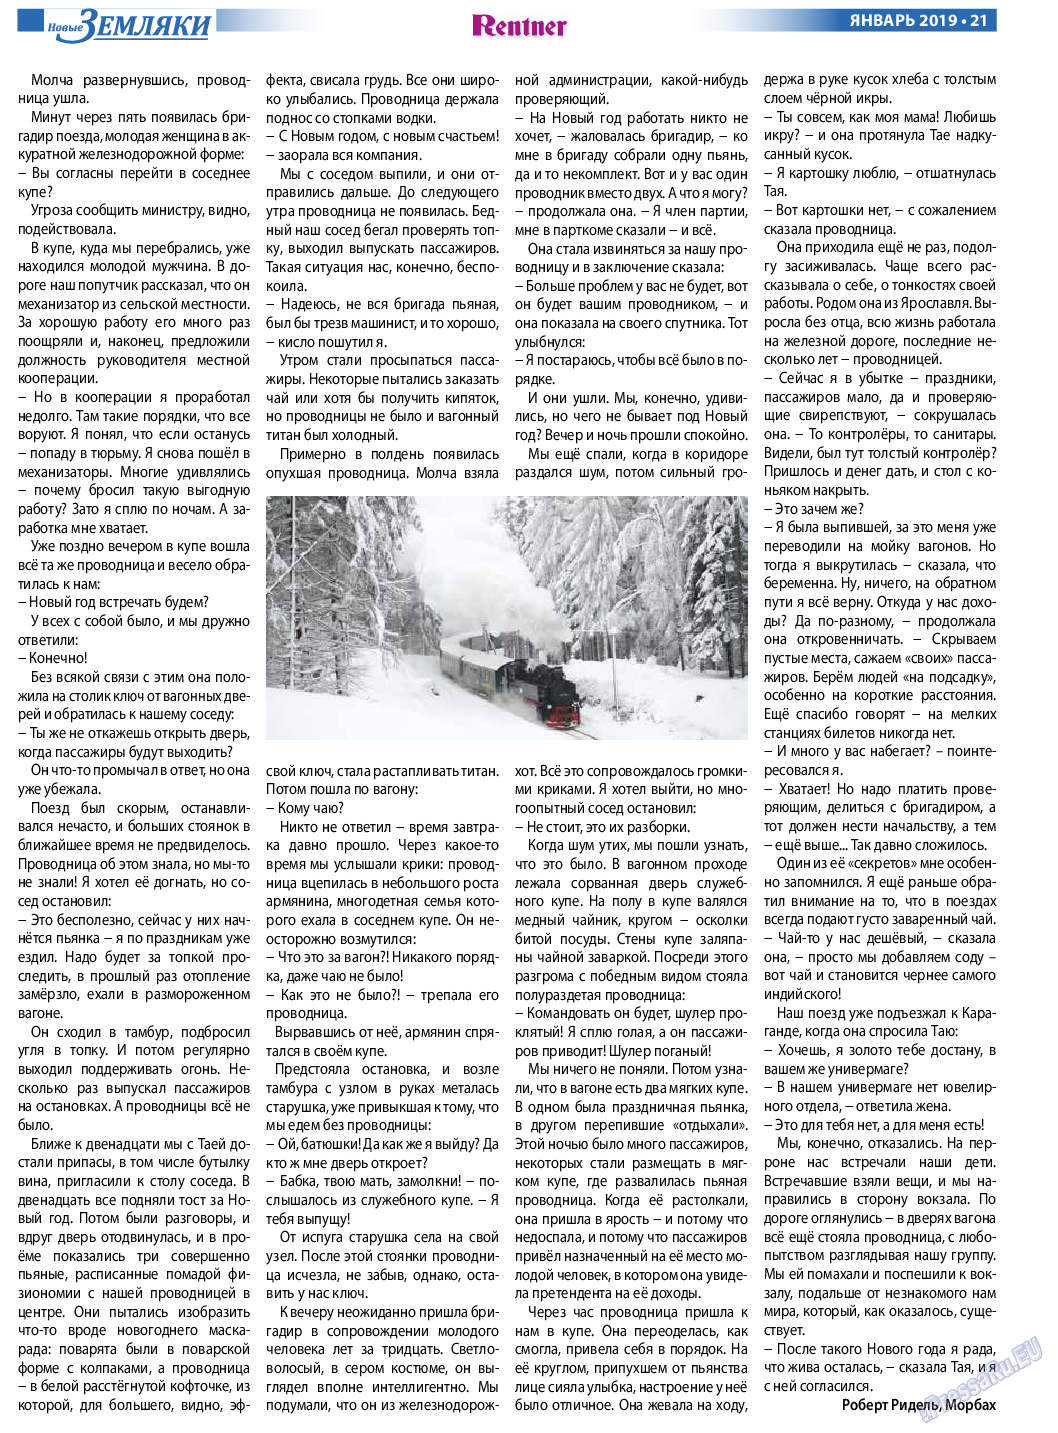 Новые Земляки, газета. 2019 №1 стр.21